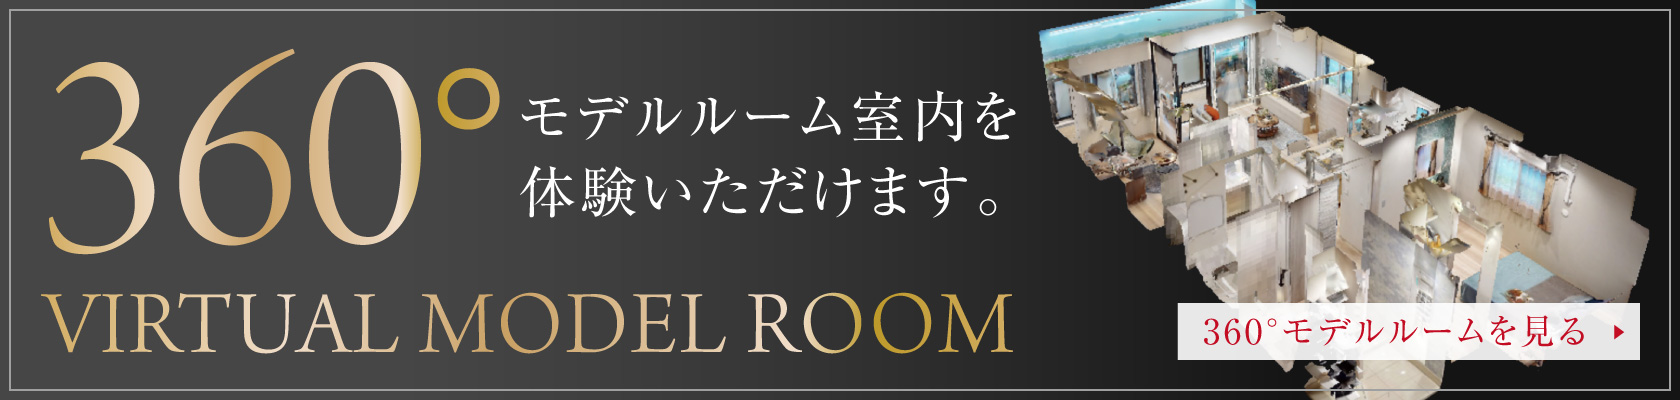 VIRTUAL MODEL ROOM
360度モデルルーム室内を体験いただけます。